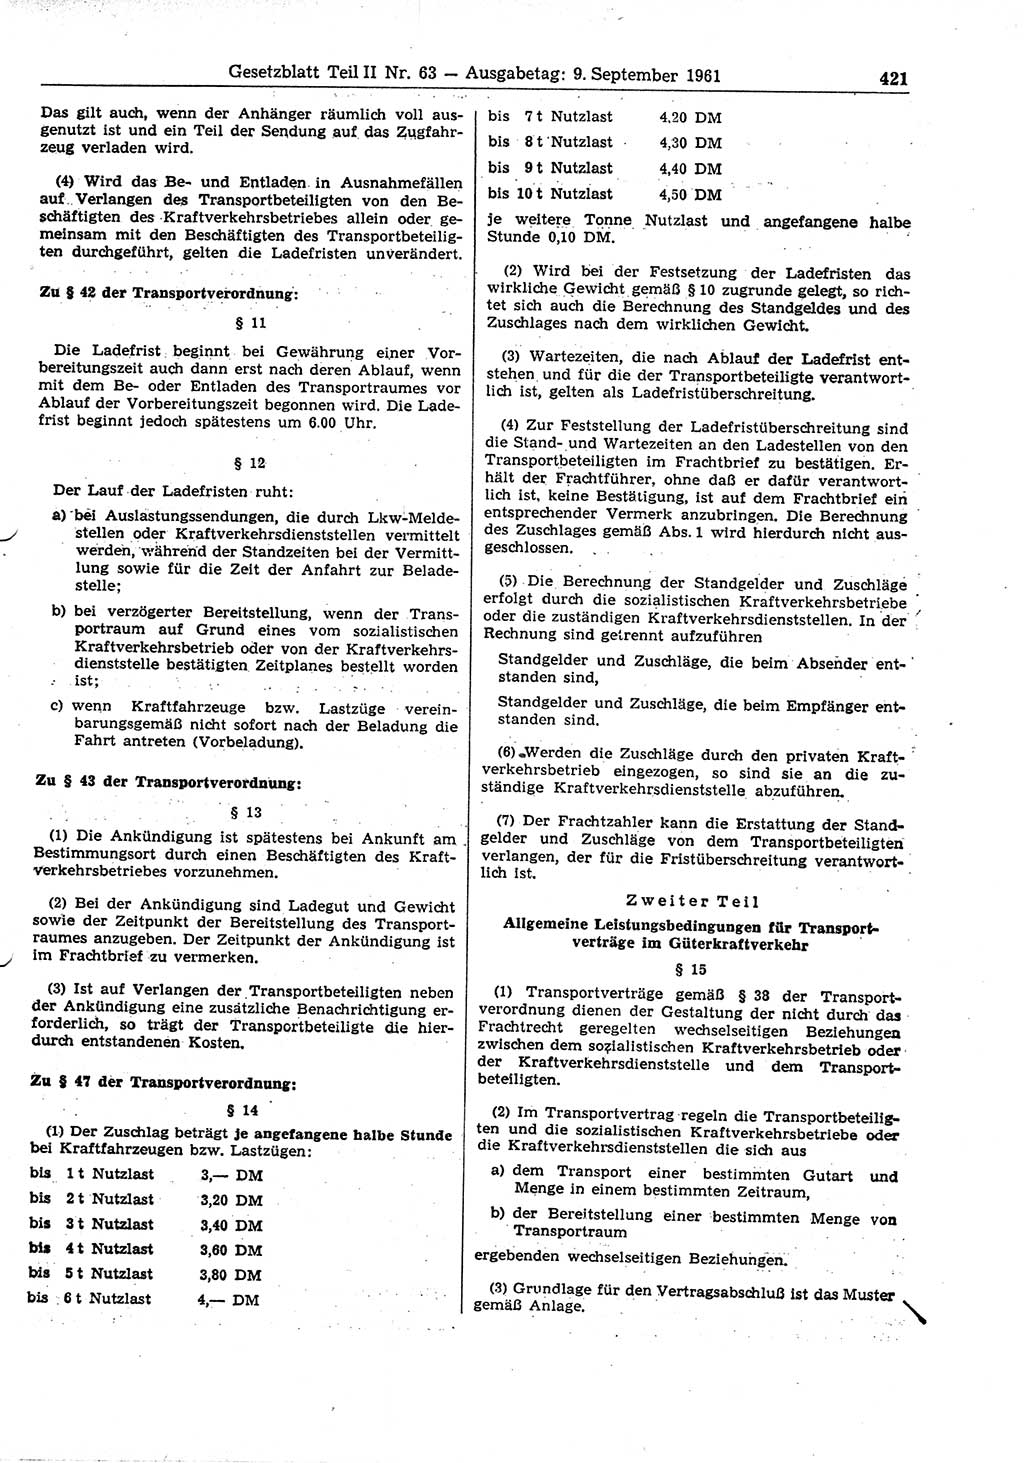 Gesetzblatt (GBl.) der Deutschen Demokratischen Republik (DDR) Teil ⅠⅠ 1961, Seite 421 (GBl. DDR ⅠⅠ 1961, S. 421)